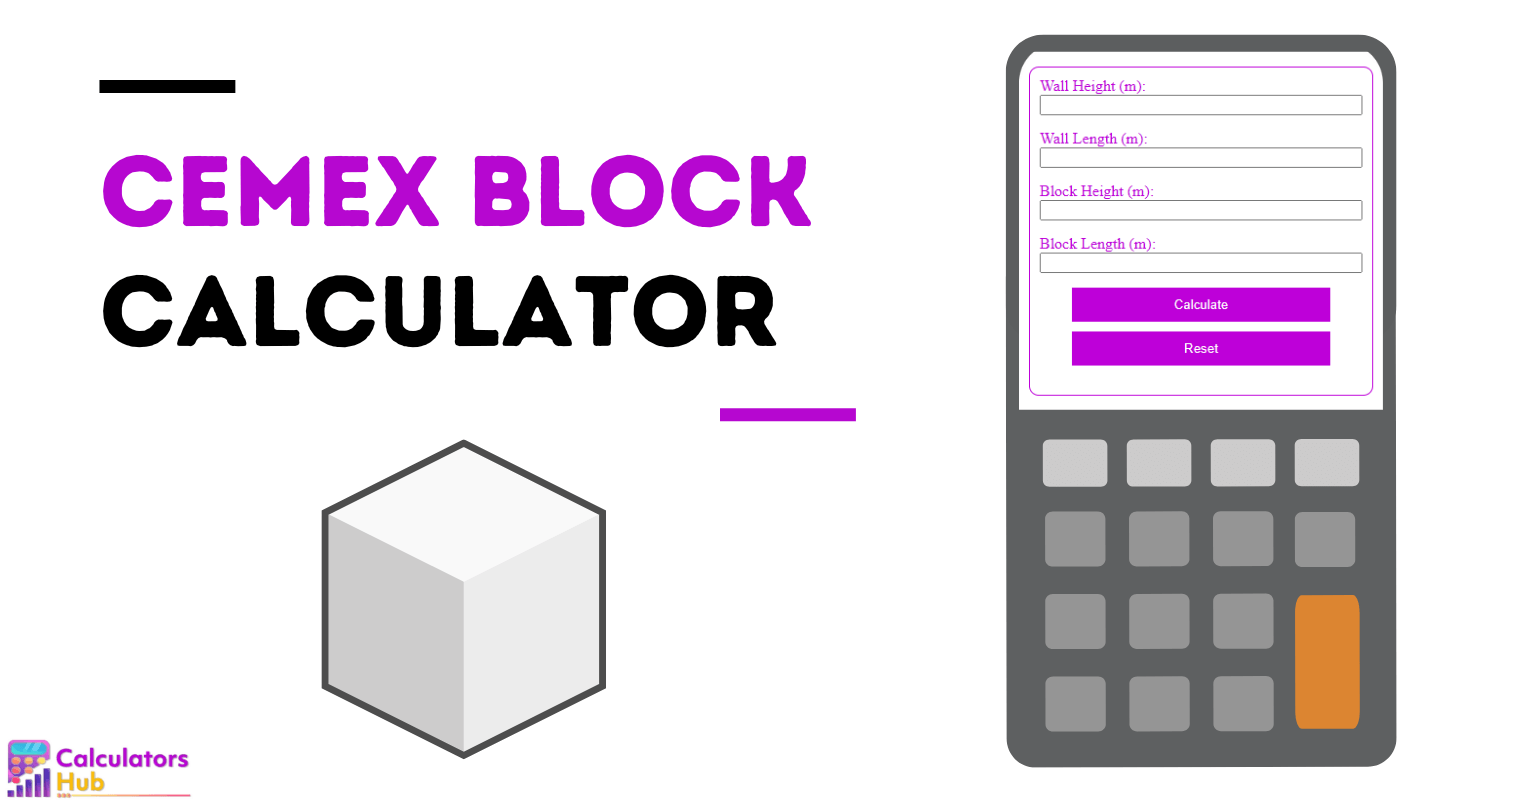 Cemex-Blockrechner